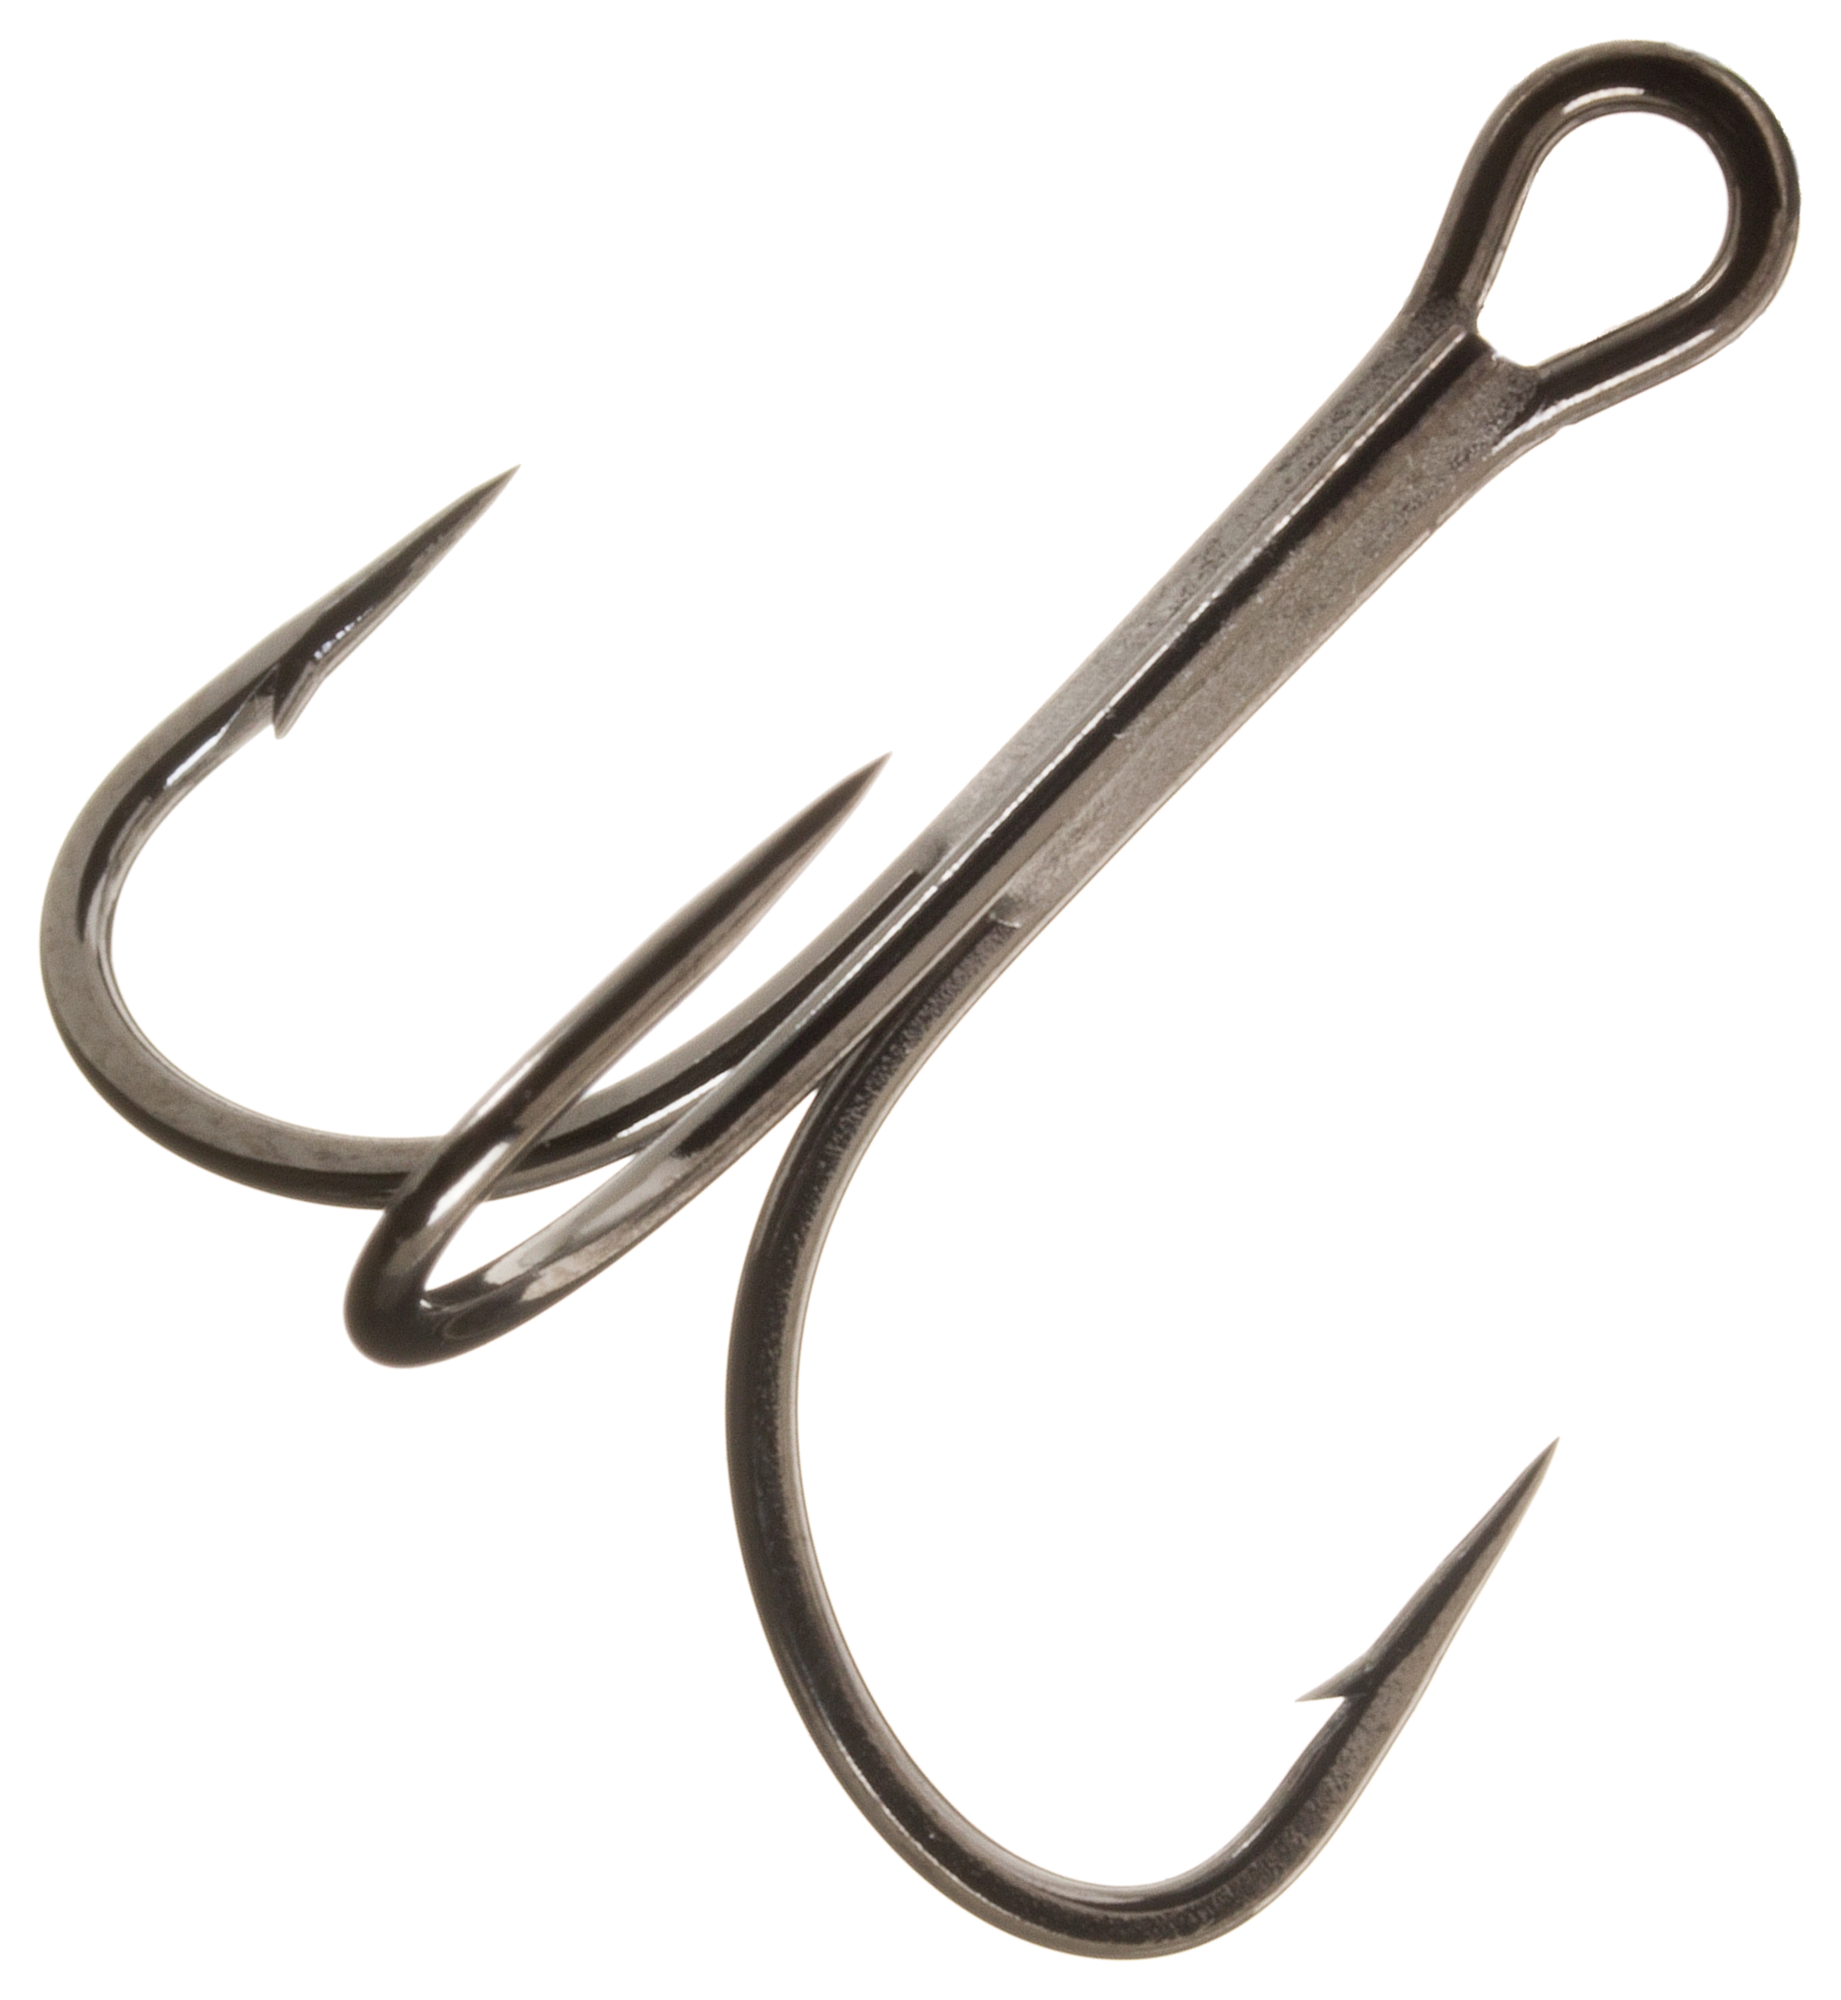 2# 4# 6# 8# 10#fishing Treble Hooks Super Sharp Solid Triple